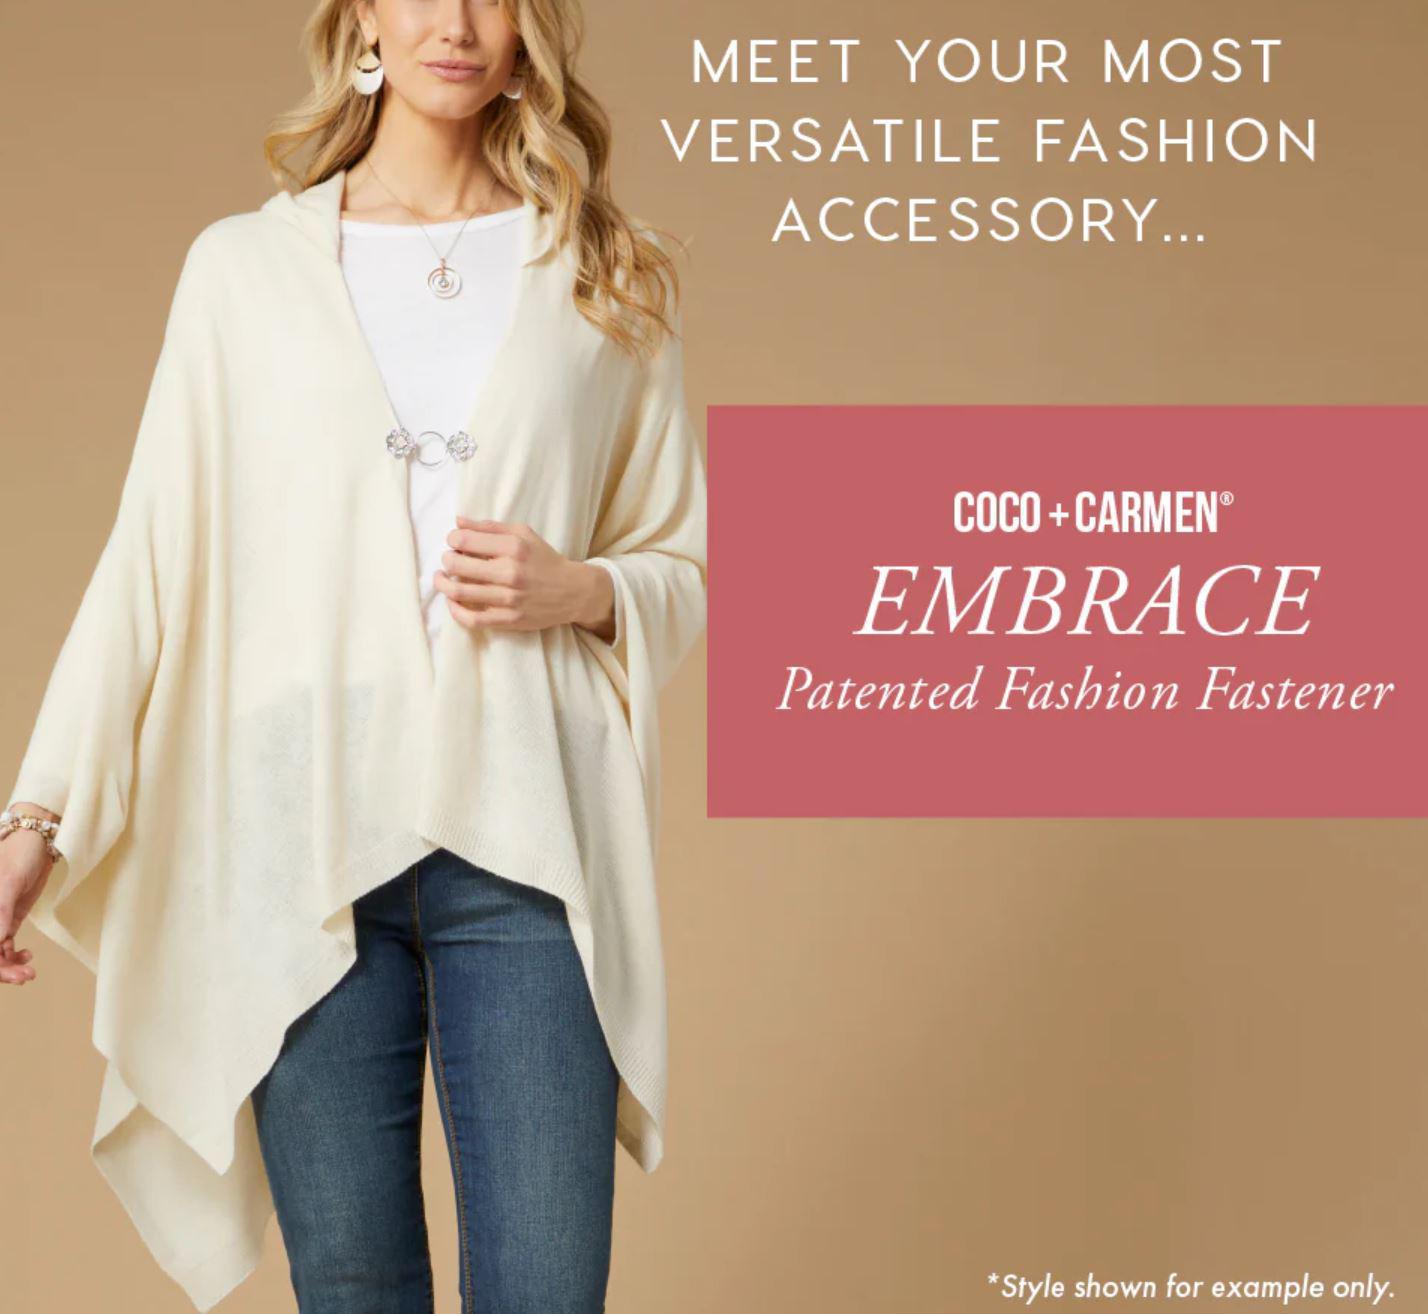 COCO + CARMEN Embrace Fashion Fastener